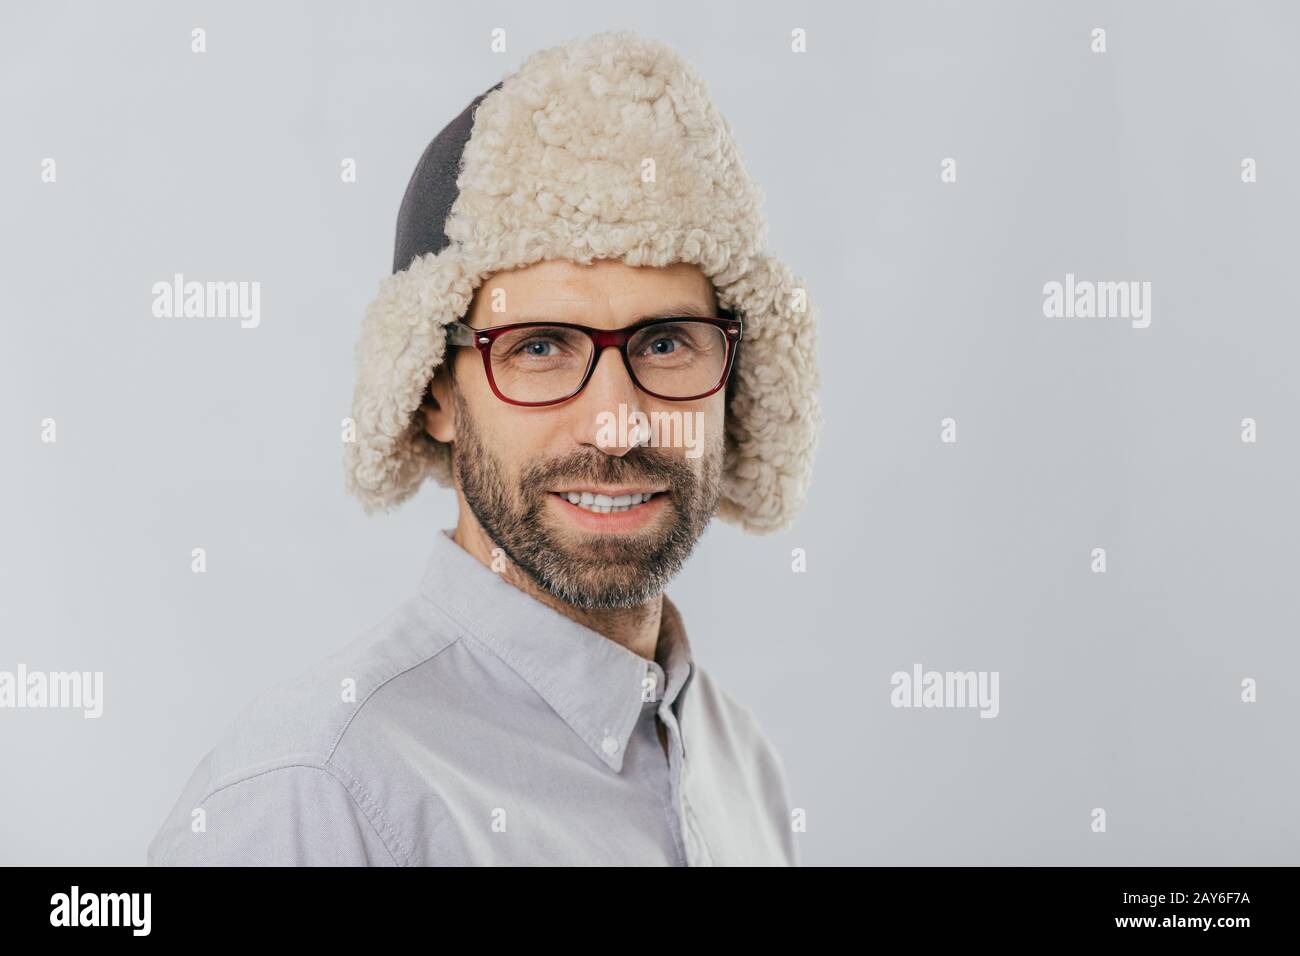 Foto von attraktiven jungen europäischen Mannes mit angenehmen Erscheinungsbild, trägt warme fut Hut, transparente Gläser, Modelle über weiße studio Wall, freut sich sho Stockfoto